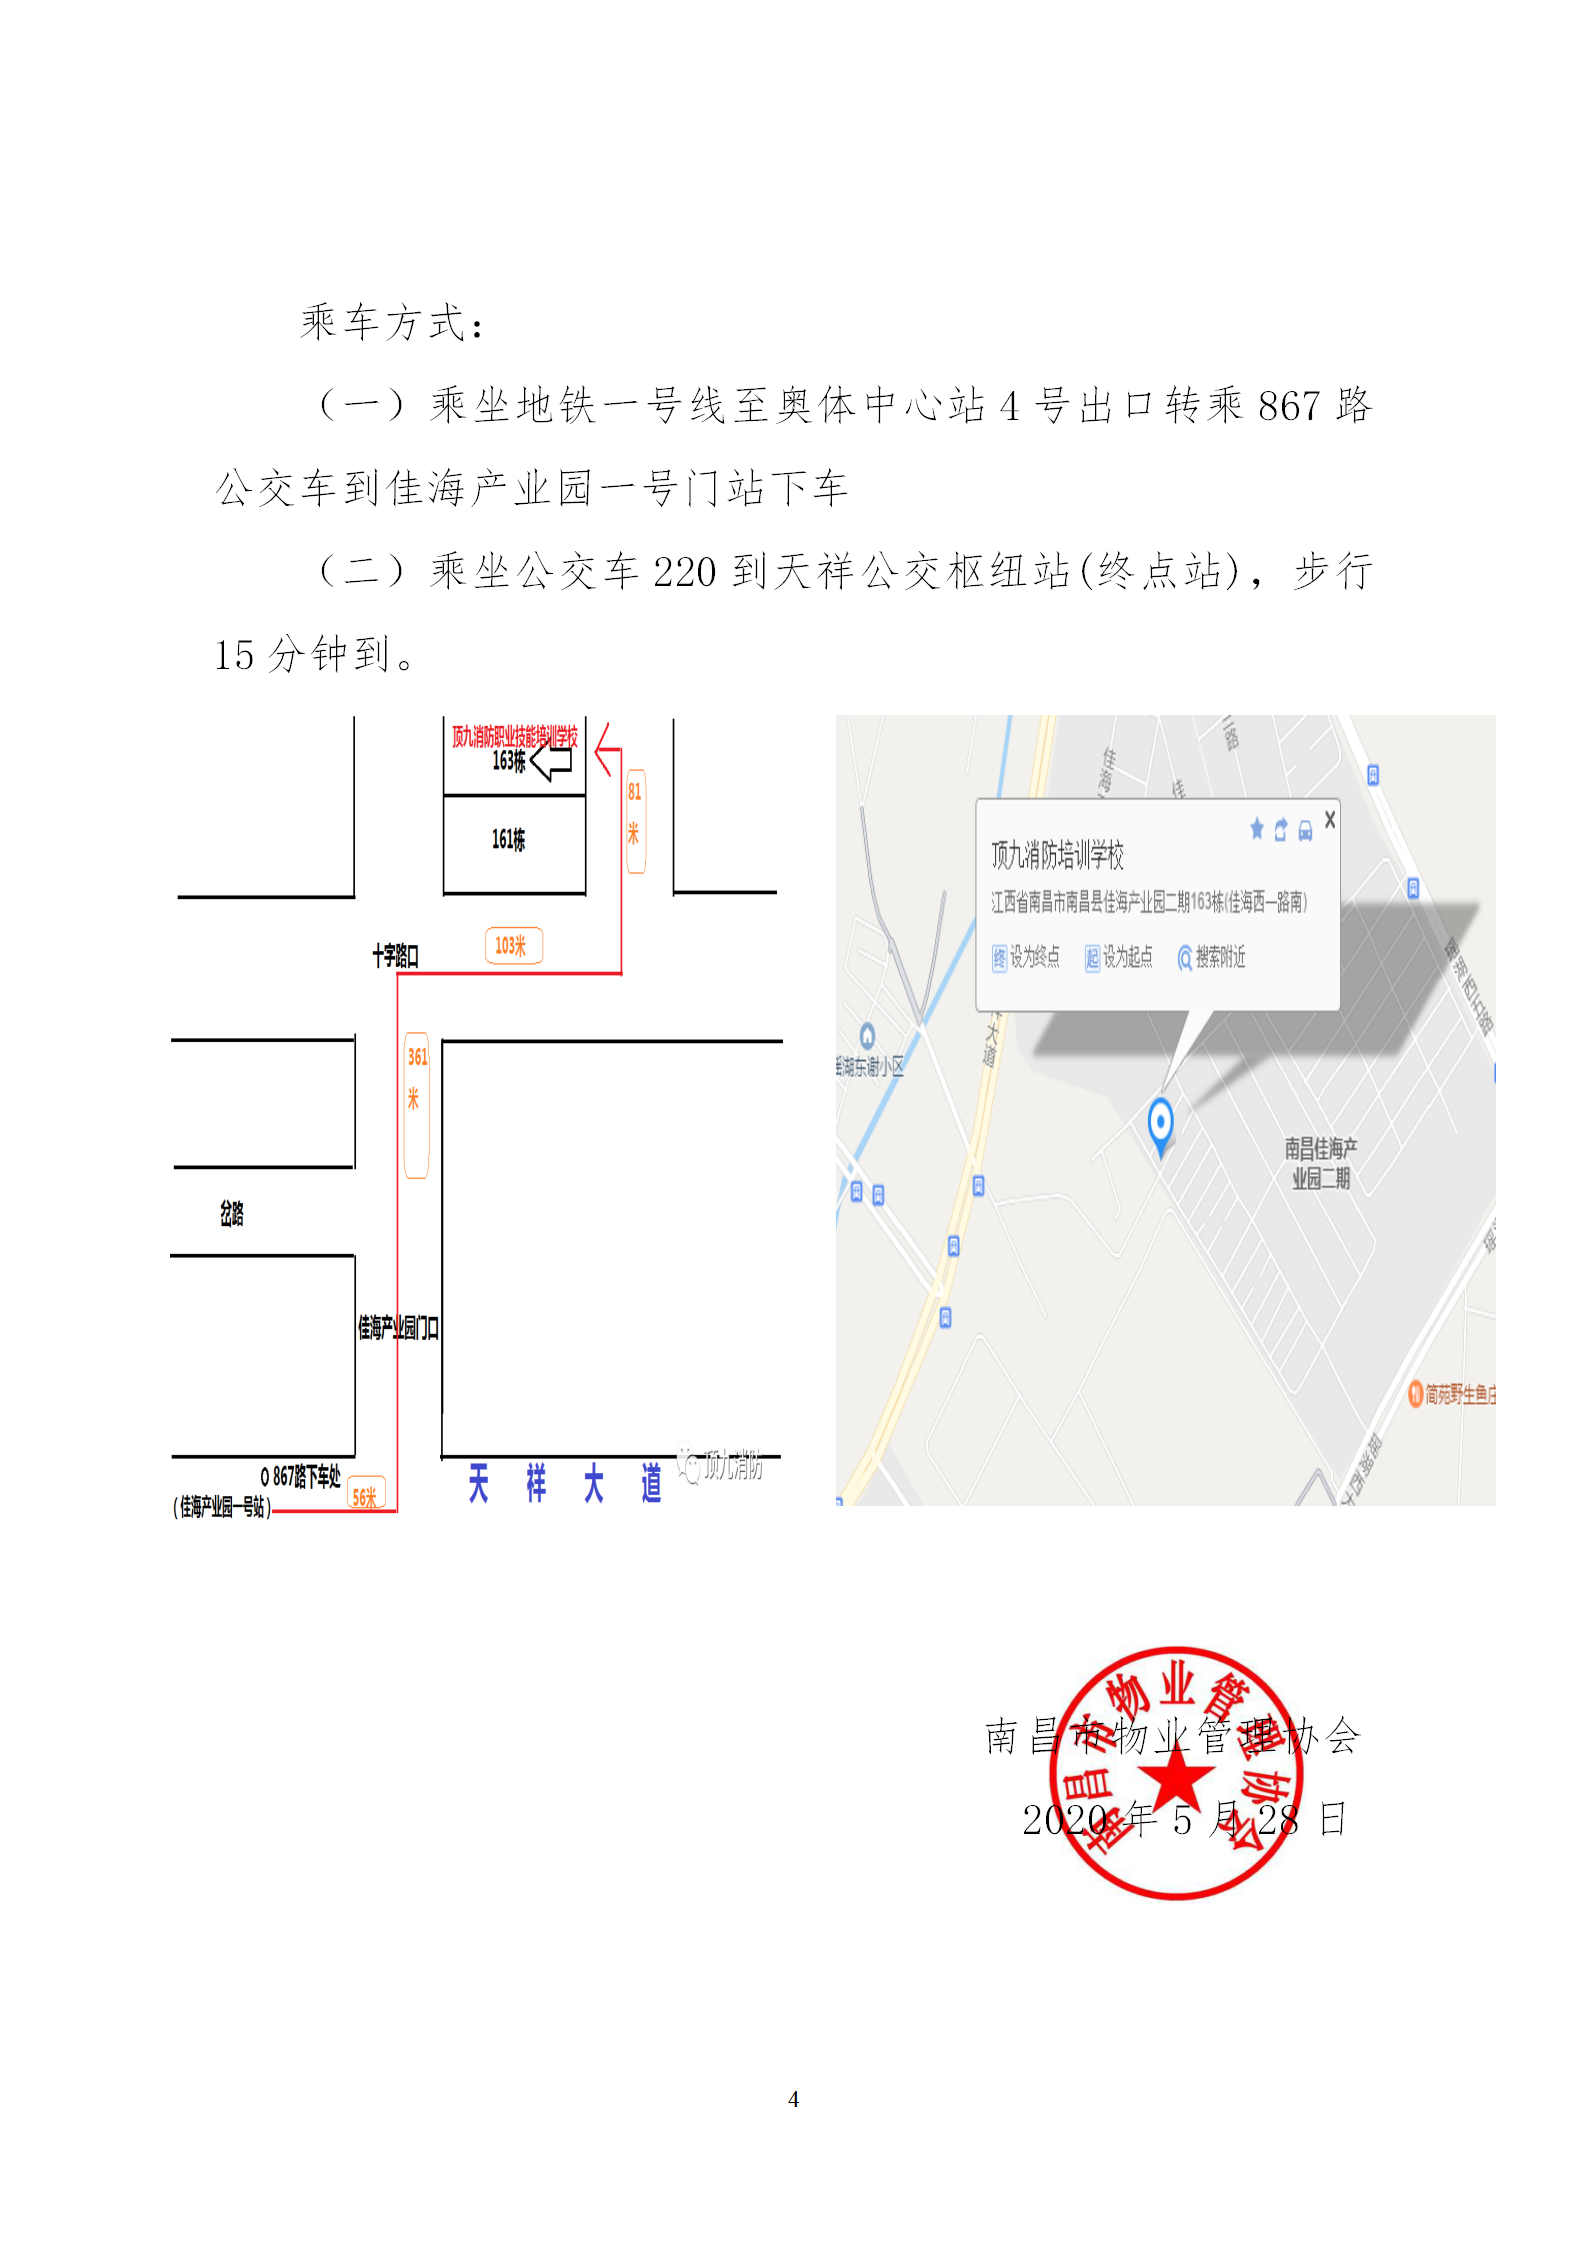 洪物协字[2020]11号 关于举办南昌市物业服务工程主管学习班的通知_04.png